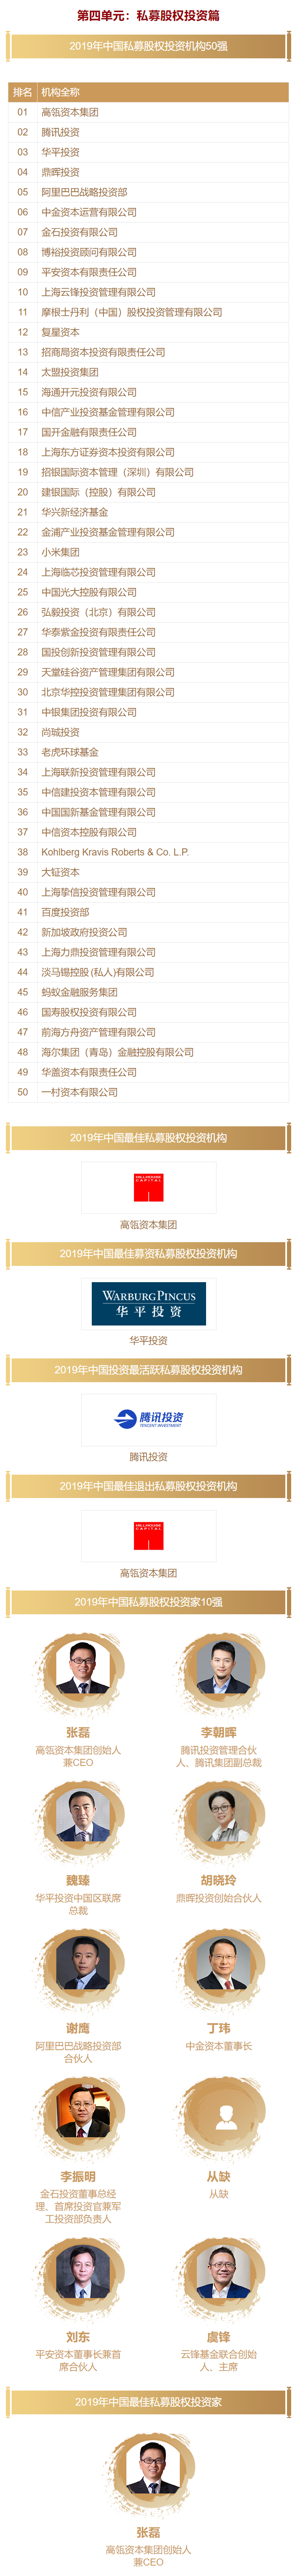 清科-2019年中国PE投资机构排名